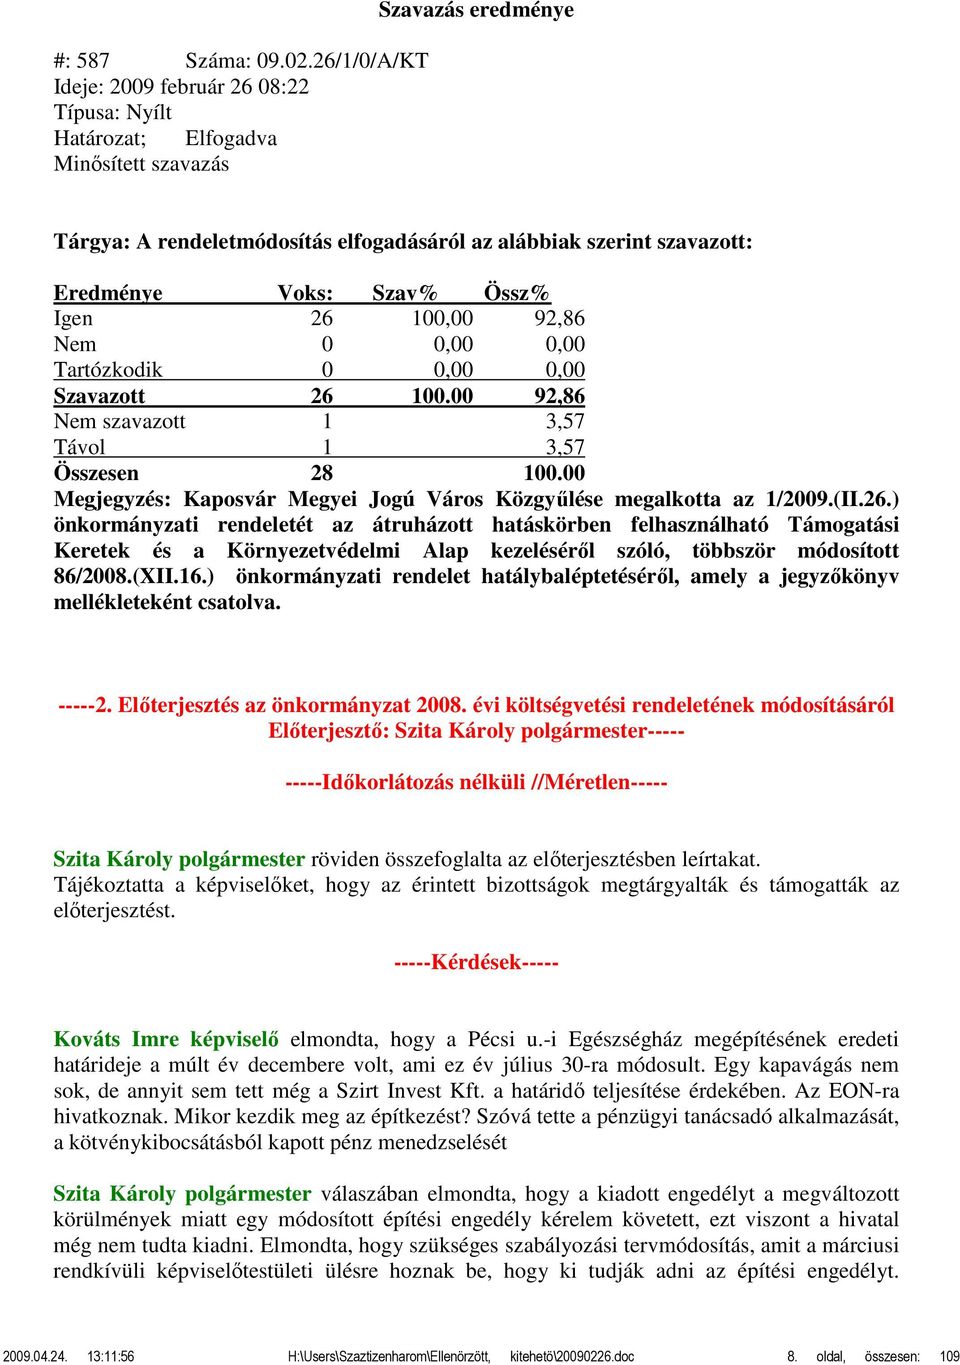 Szavazott 26 100.00 92,86 Nem szavazott 1 3,57 Távol 1 3,57 Megjegyzés: Kaposvár Megyei Jogú Város Közgyűlése megalkotta az 1/2009.(II.26.) önkormányzati rendeletét az átruházott hatáskörben felhasználható Támogatási Keretek és a Környezetvédelmi Alap kezeléséről szóló, többször módosított 86/2008.